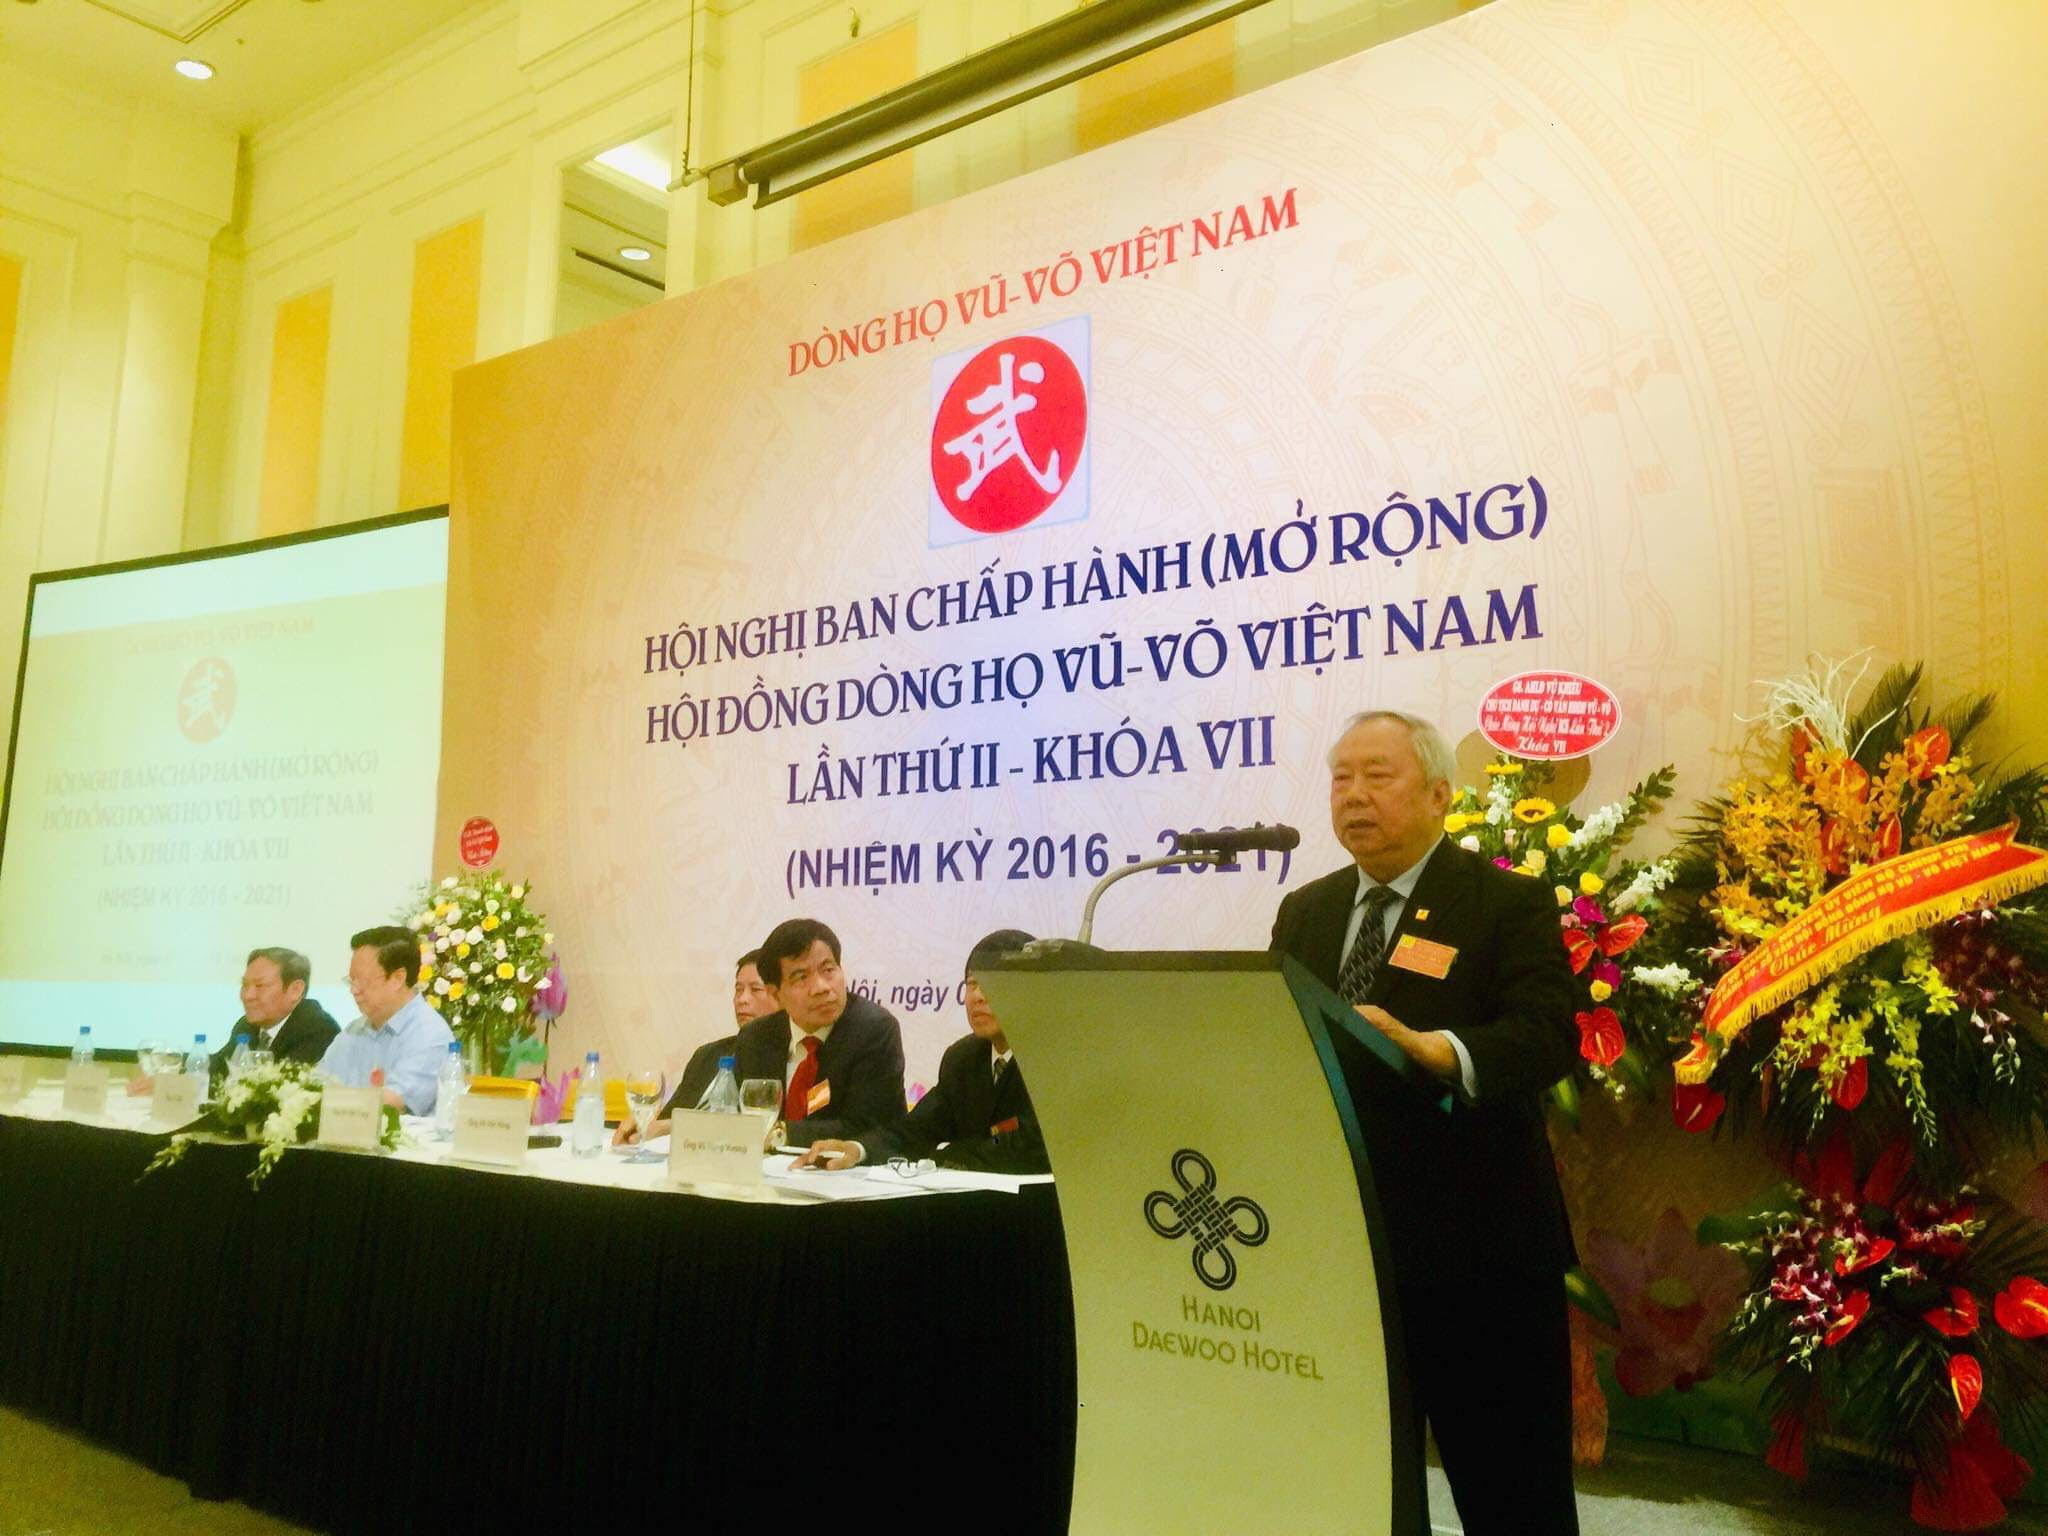 Ông Vũ Mão chính thức đảm nhiệm trọng trách Chủ tịch Hội đồng dòng họ Vũ Võ Việt Nam